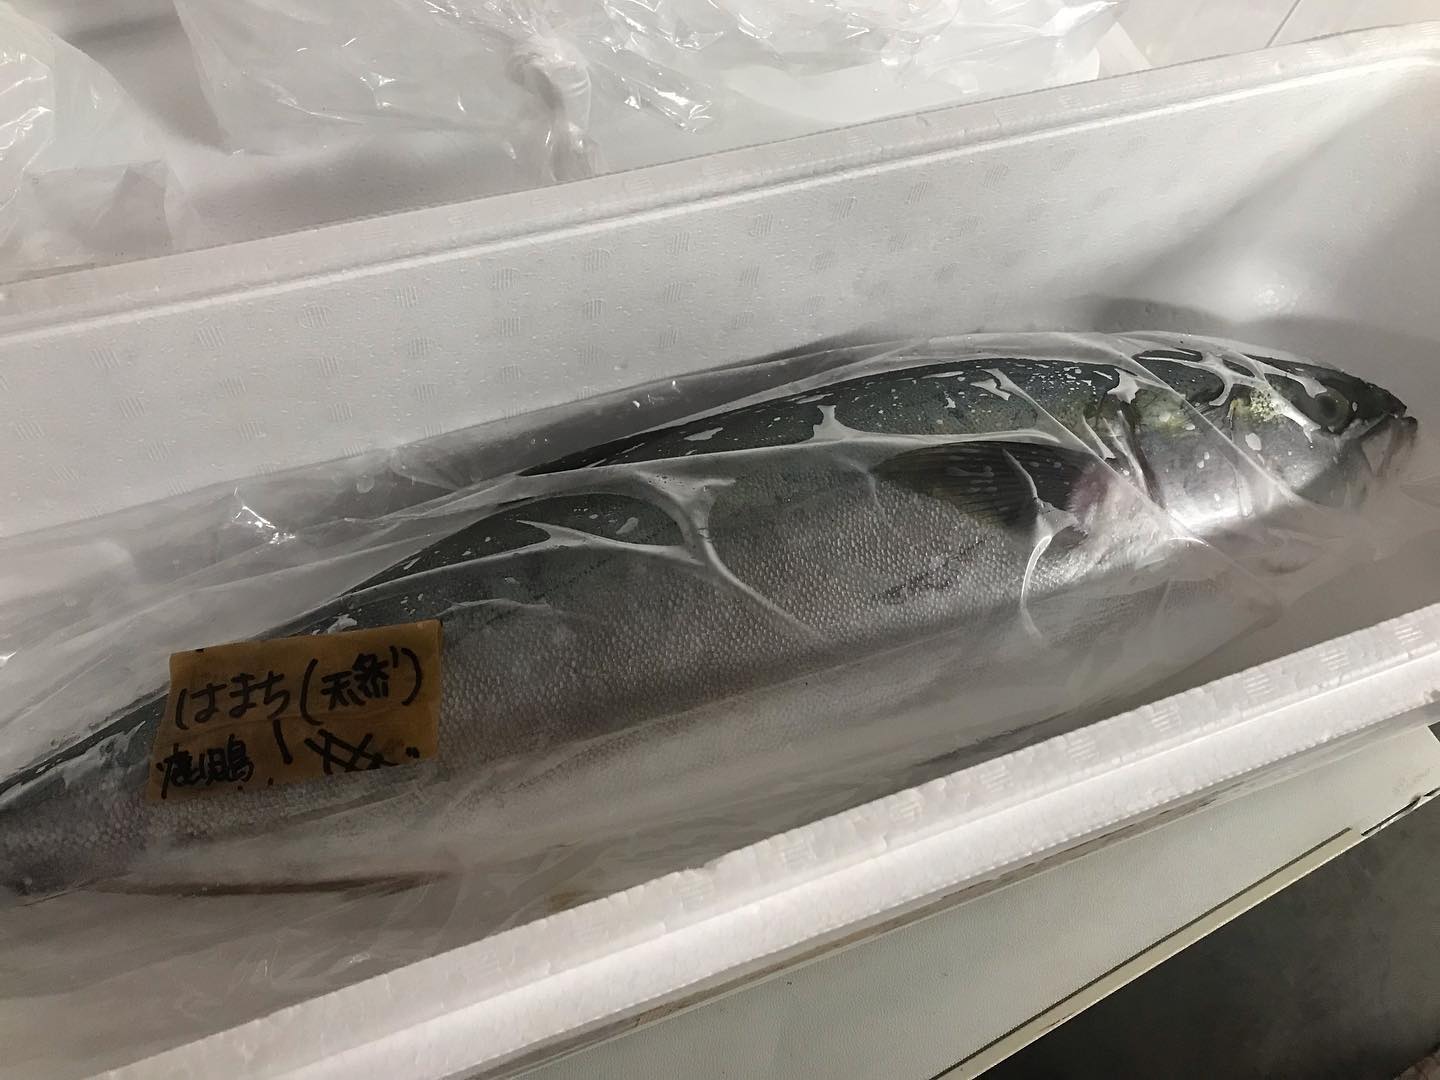 居酒屋 本日の入荷鹿児島県産天然ハマチ とり貝 高知県産カツオ等々 新鮮魚入荷しています